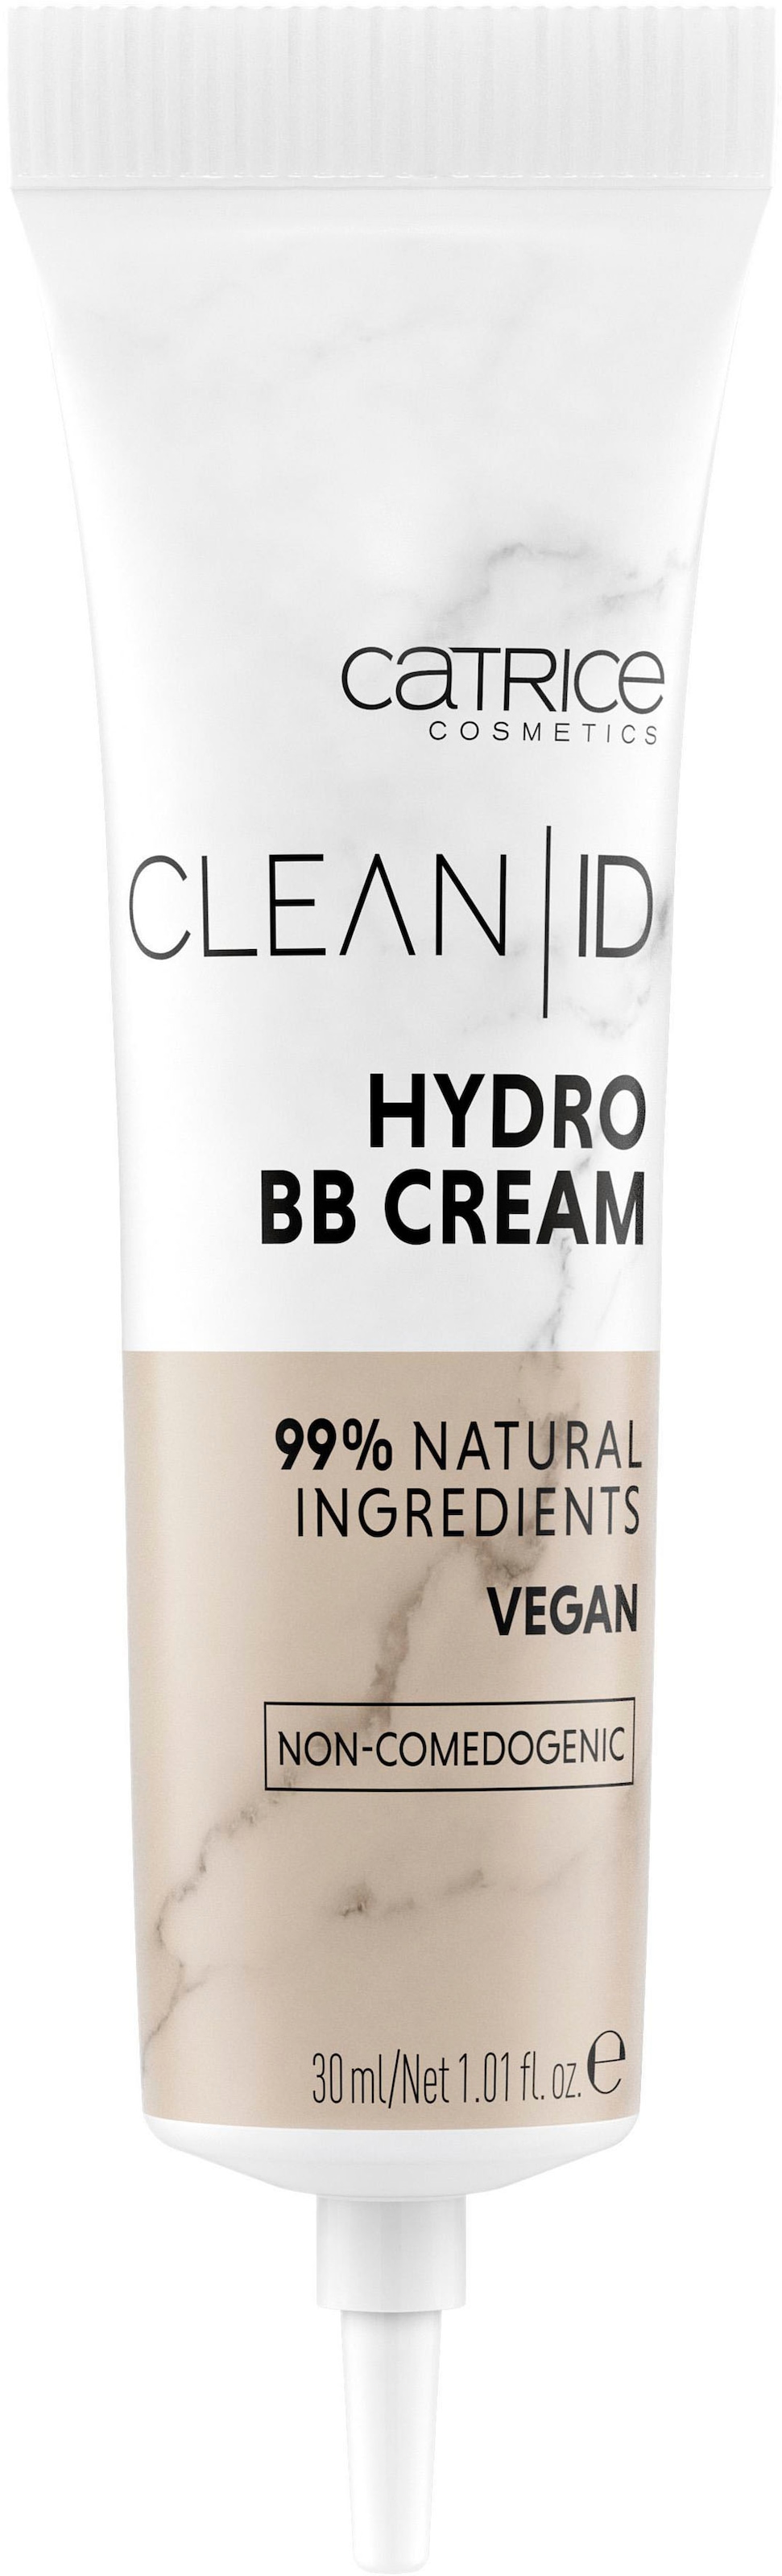 ID tlg.) BB BAUR Cream«, | online kaufen (3 BB-Creme Catrice Hydro »Clean